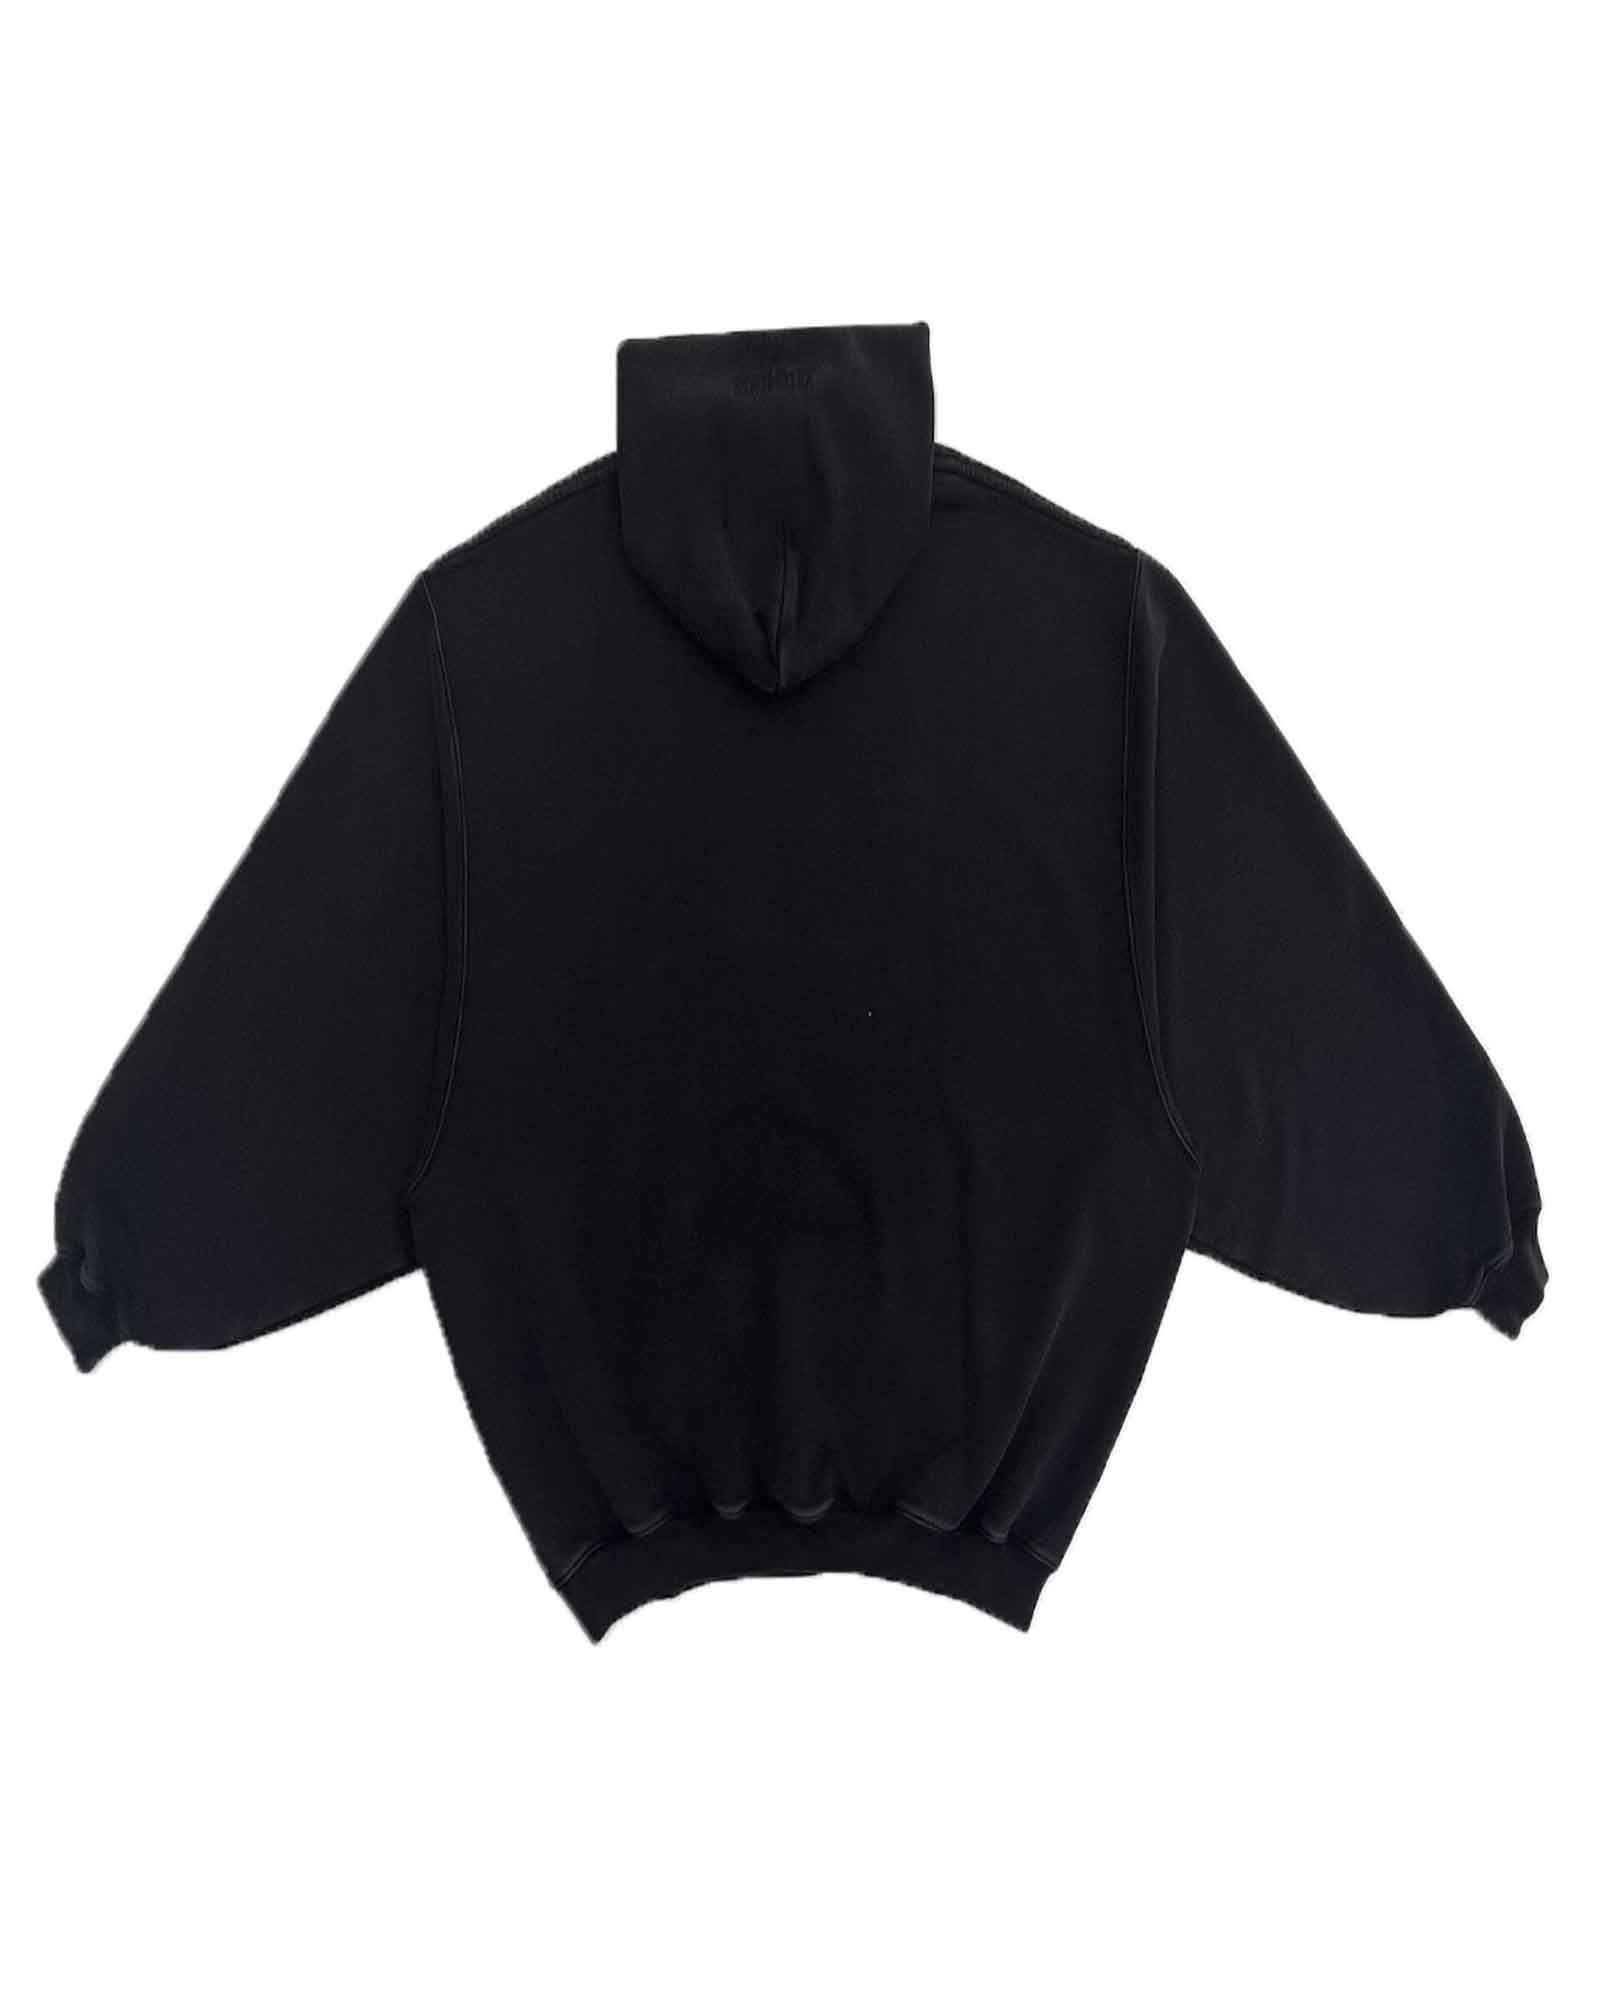 ヴェトモン/Limited edition crystal logo hoodie/プルオーバーパーカー/Black - XS